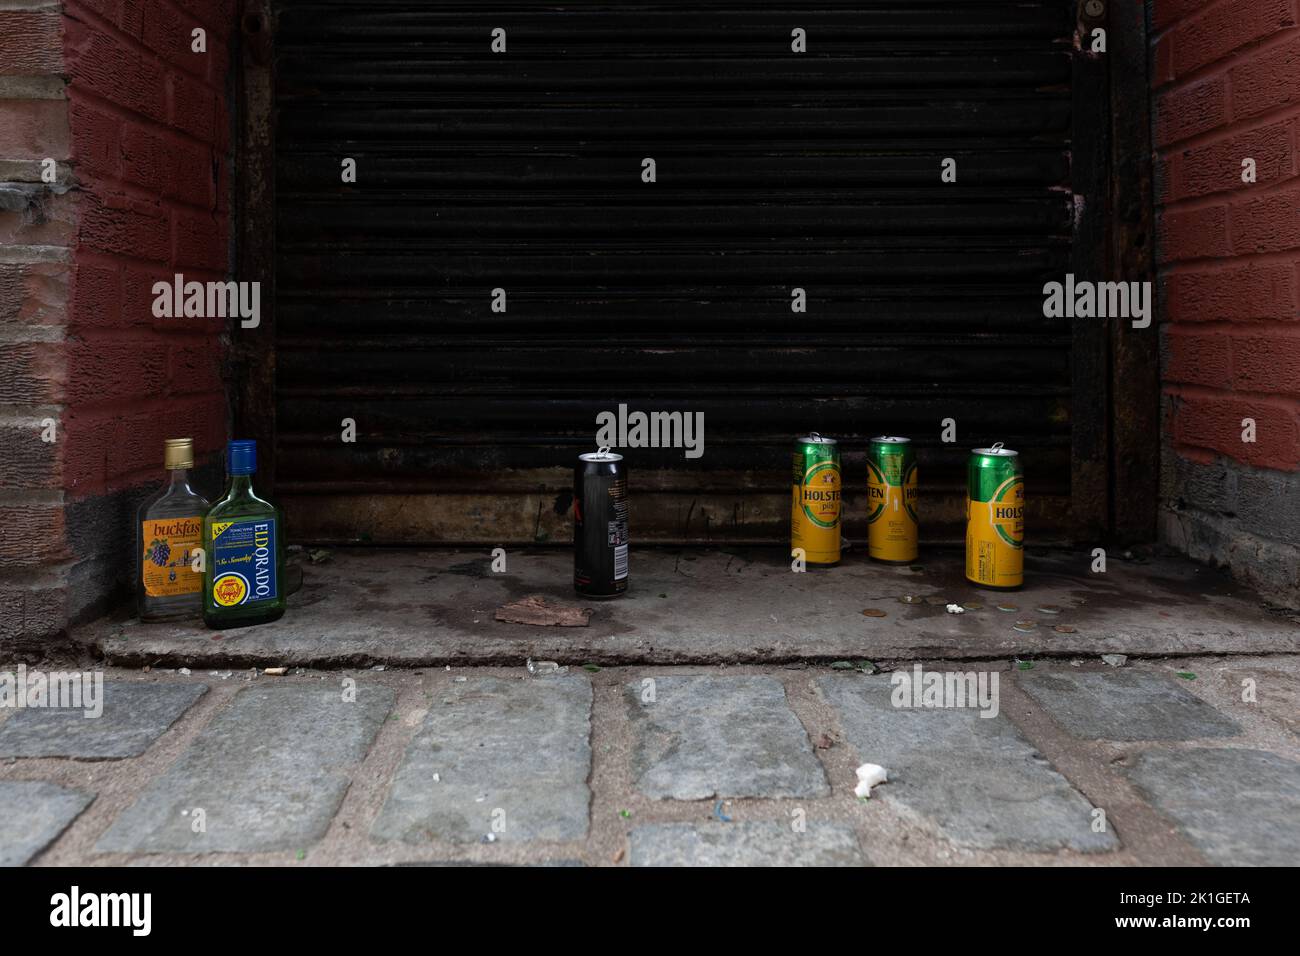 Alcohol Scotland - boîtes vides buckfast, Eldorado et lager dans l'allée arrière, centre-ville de Glasgow, Écosse, Royaume-Uni Banque D'Images